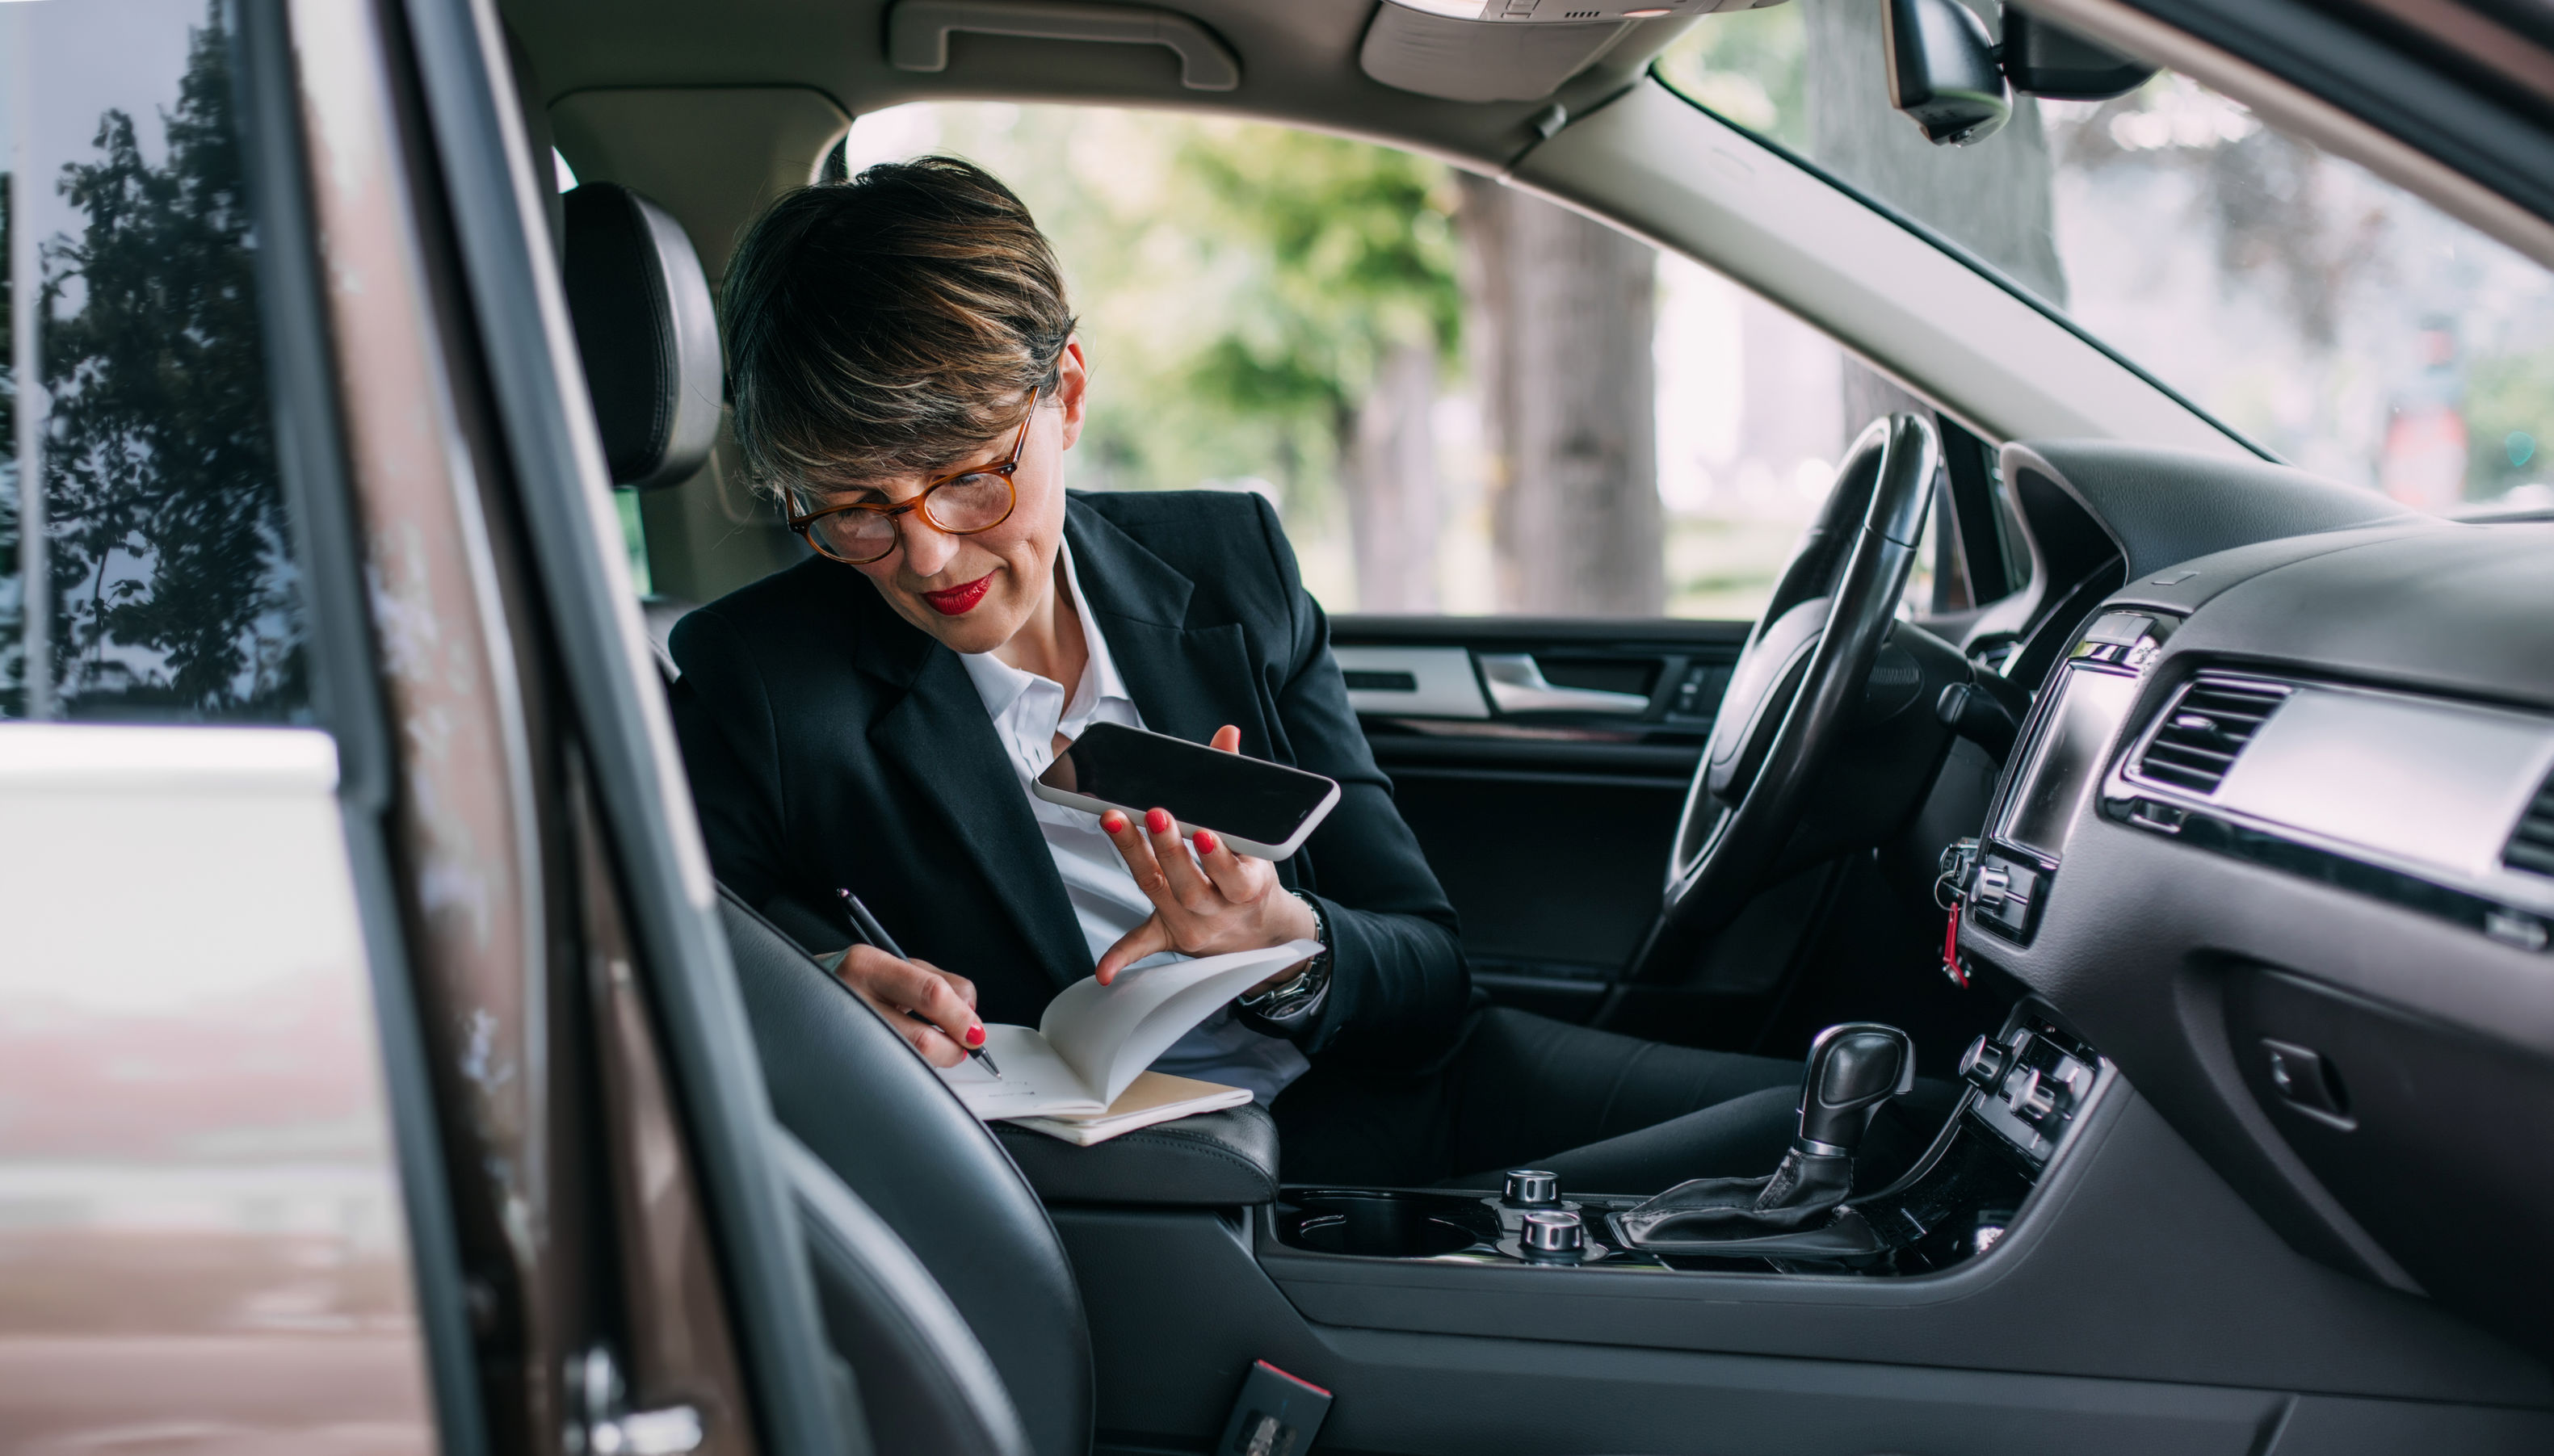 Attestato di assicurazione: donna telefona in auto